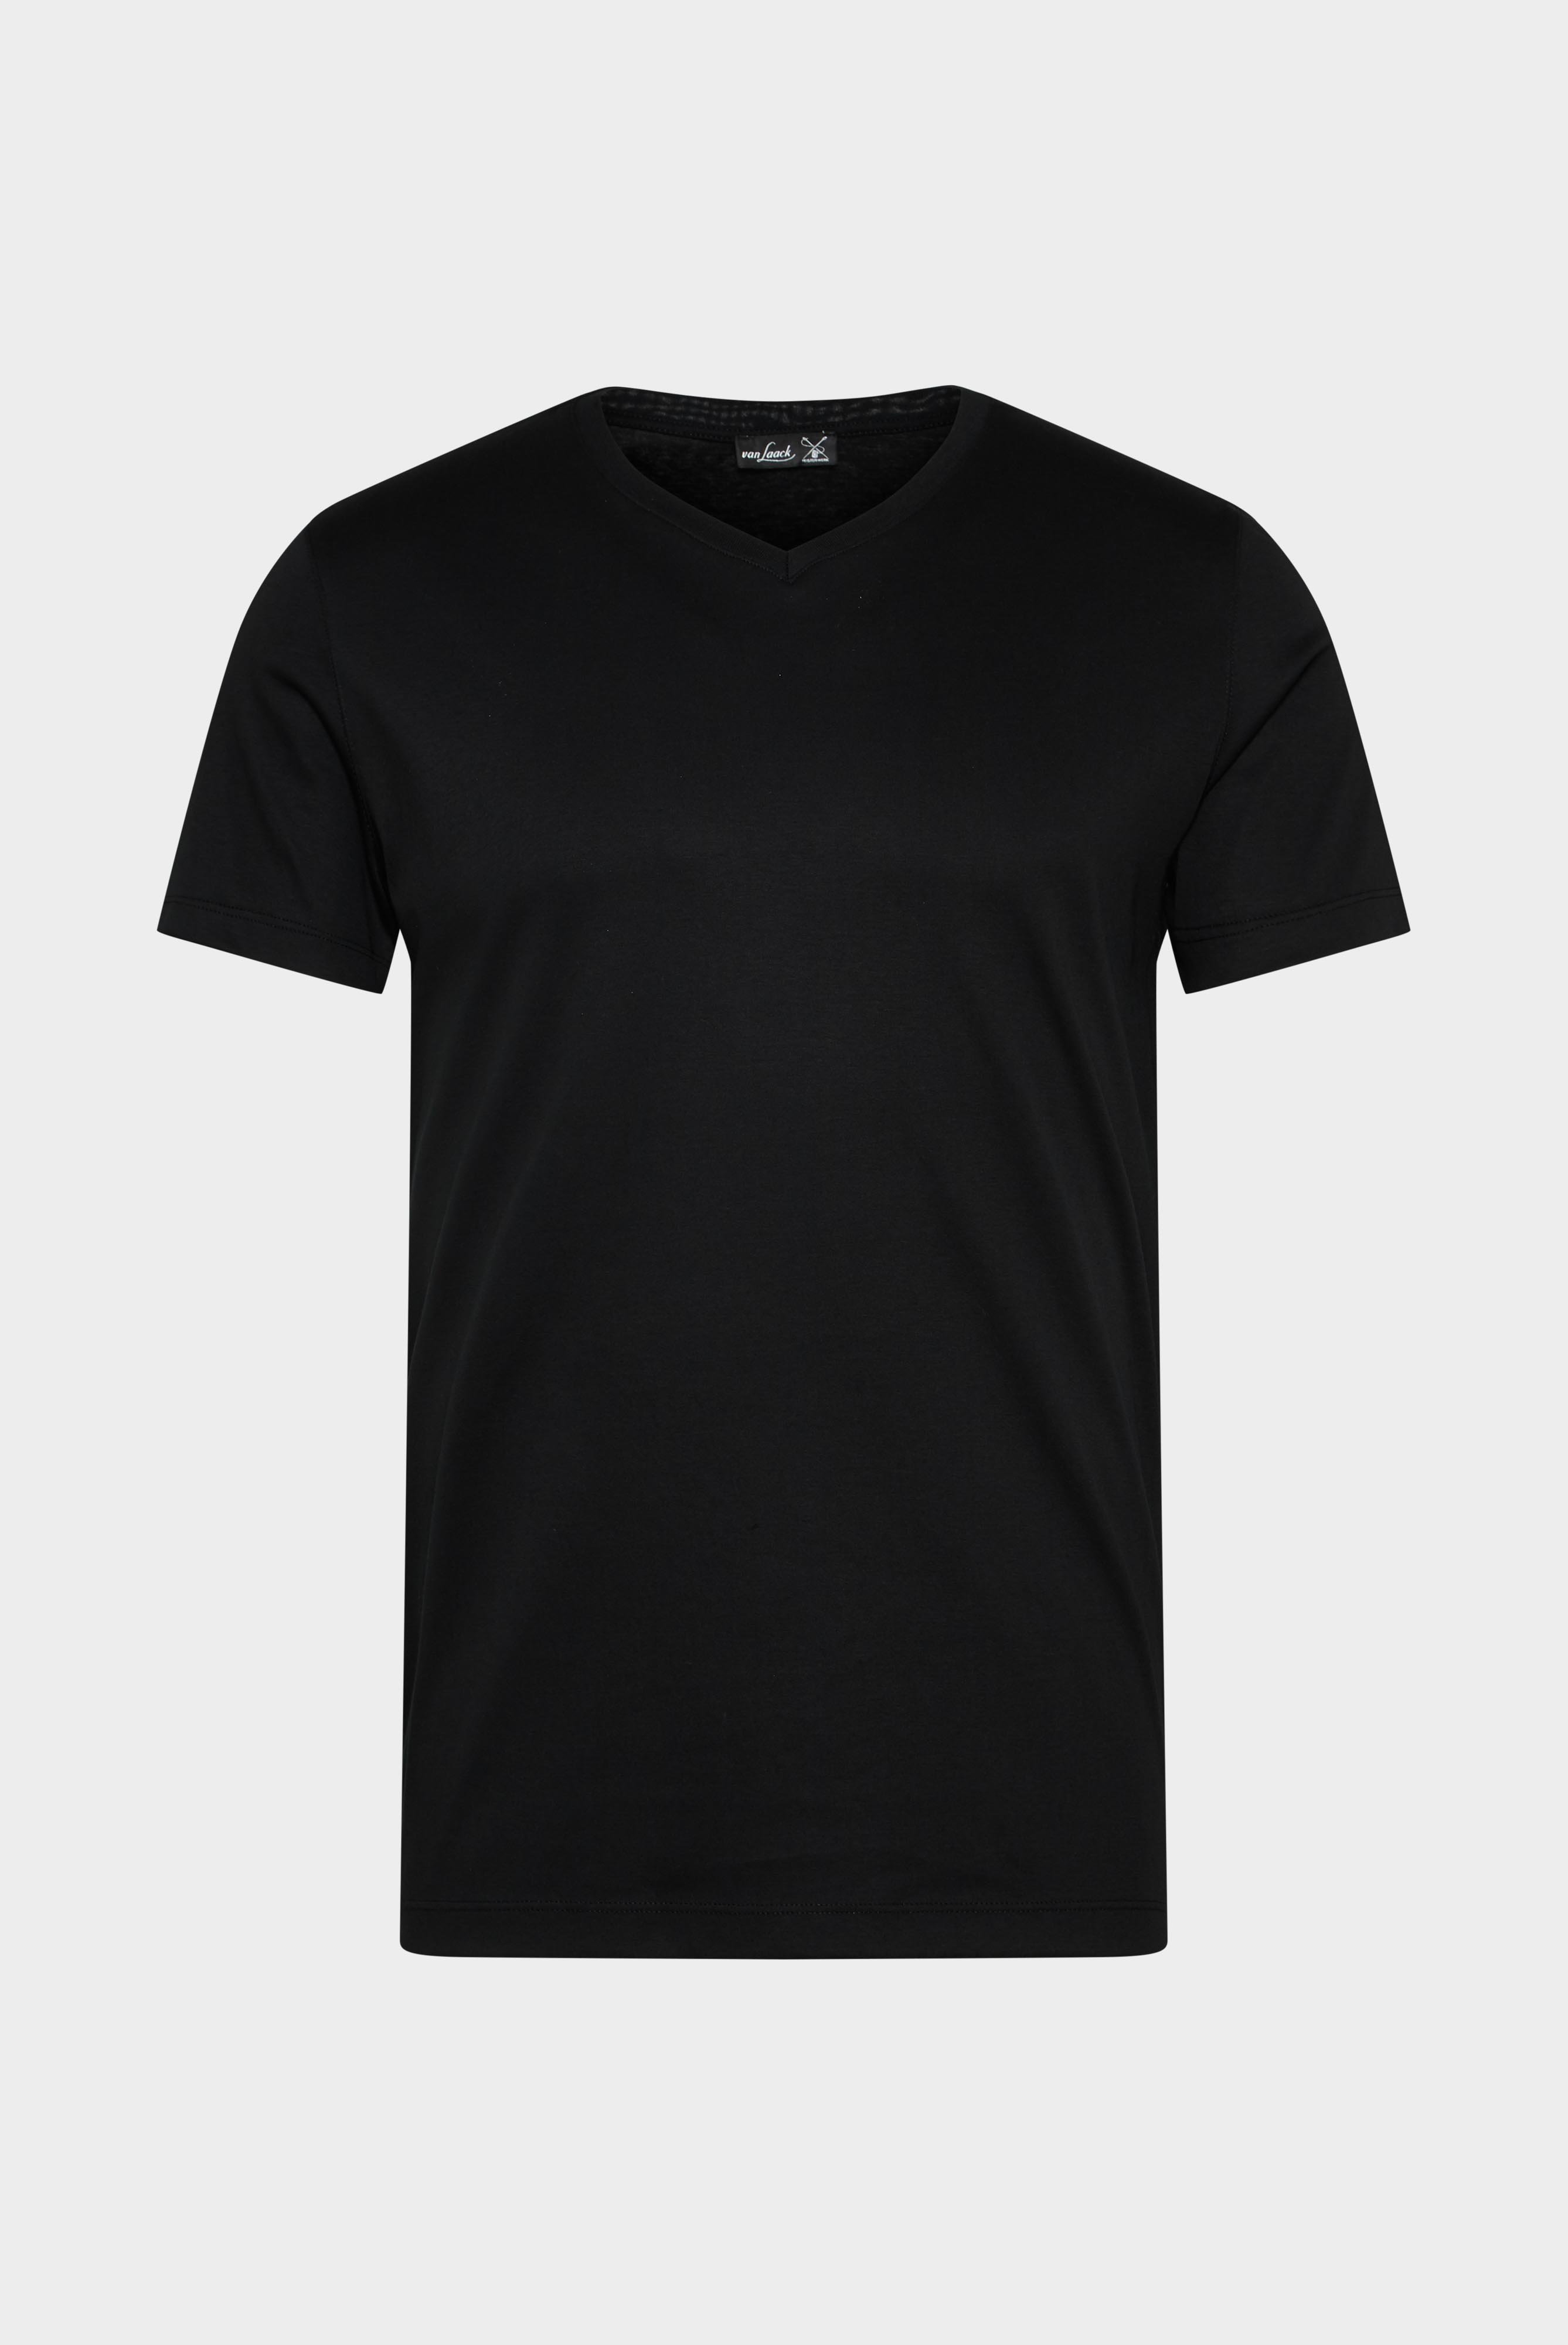 T-Shirts+Hochwertiges Herren T-Shirt mit V-Ausschnitt aus Baumwolle  Tailor Fit Schwarz+20.1715.UX.180031.099.XS